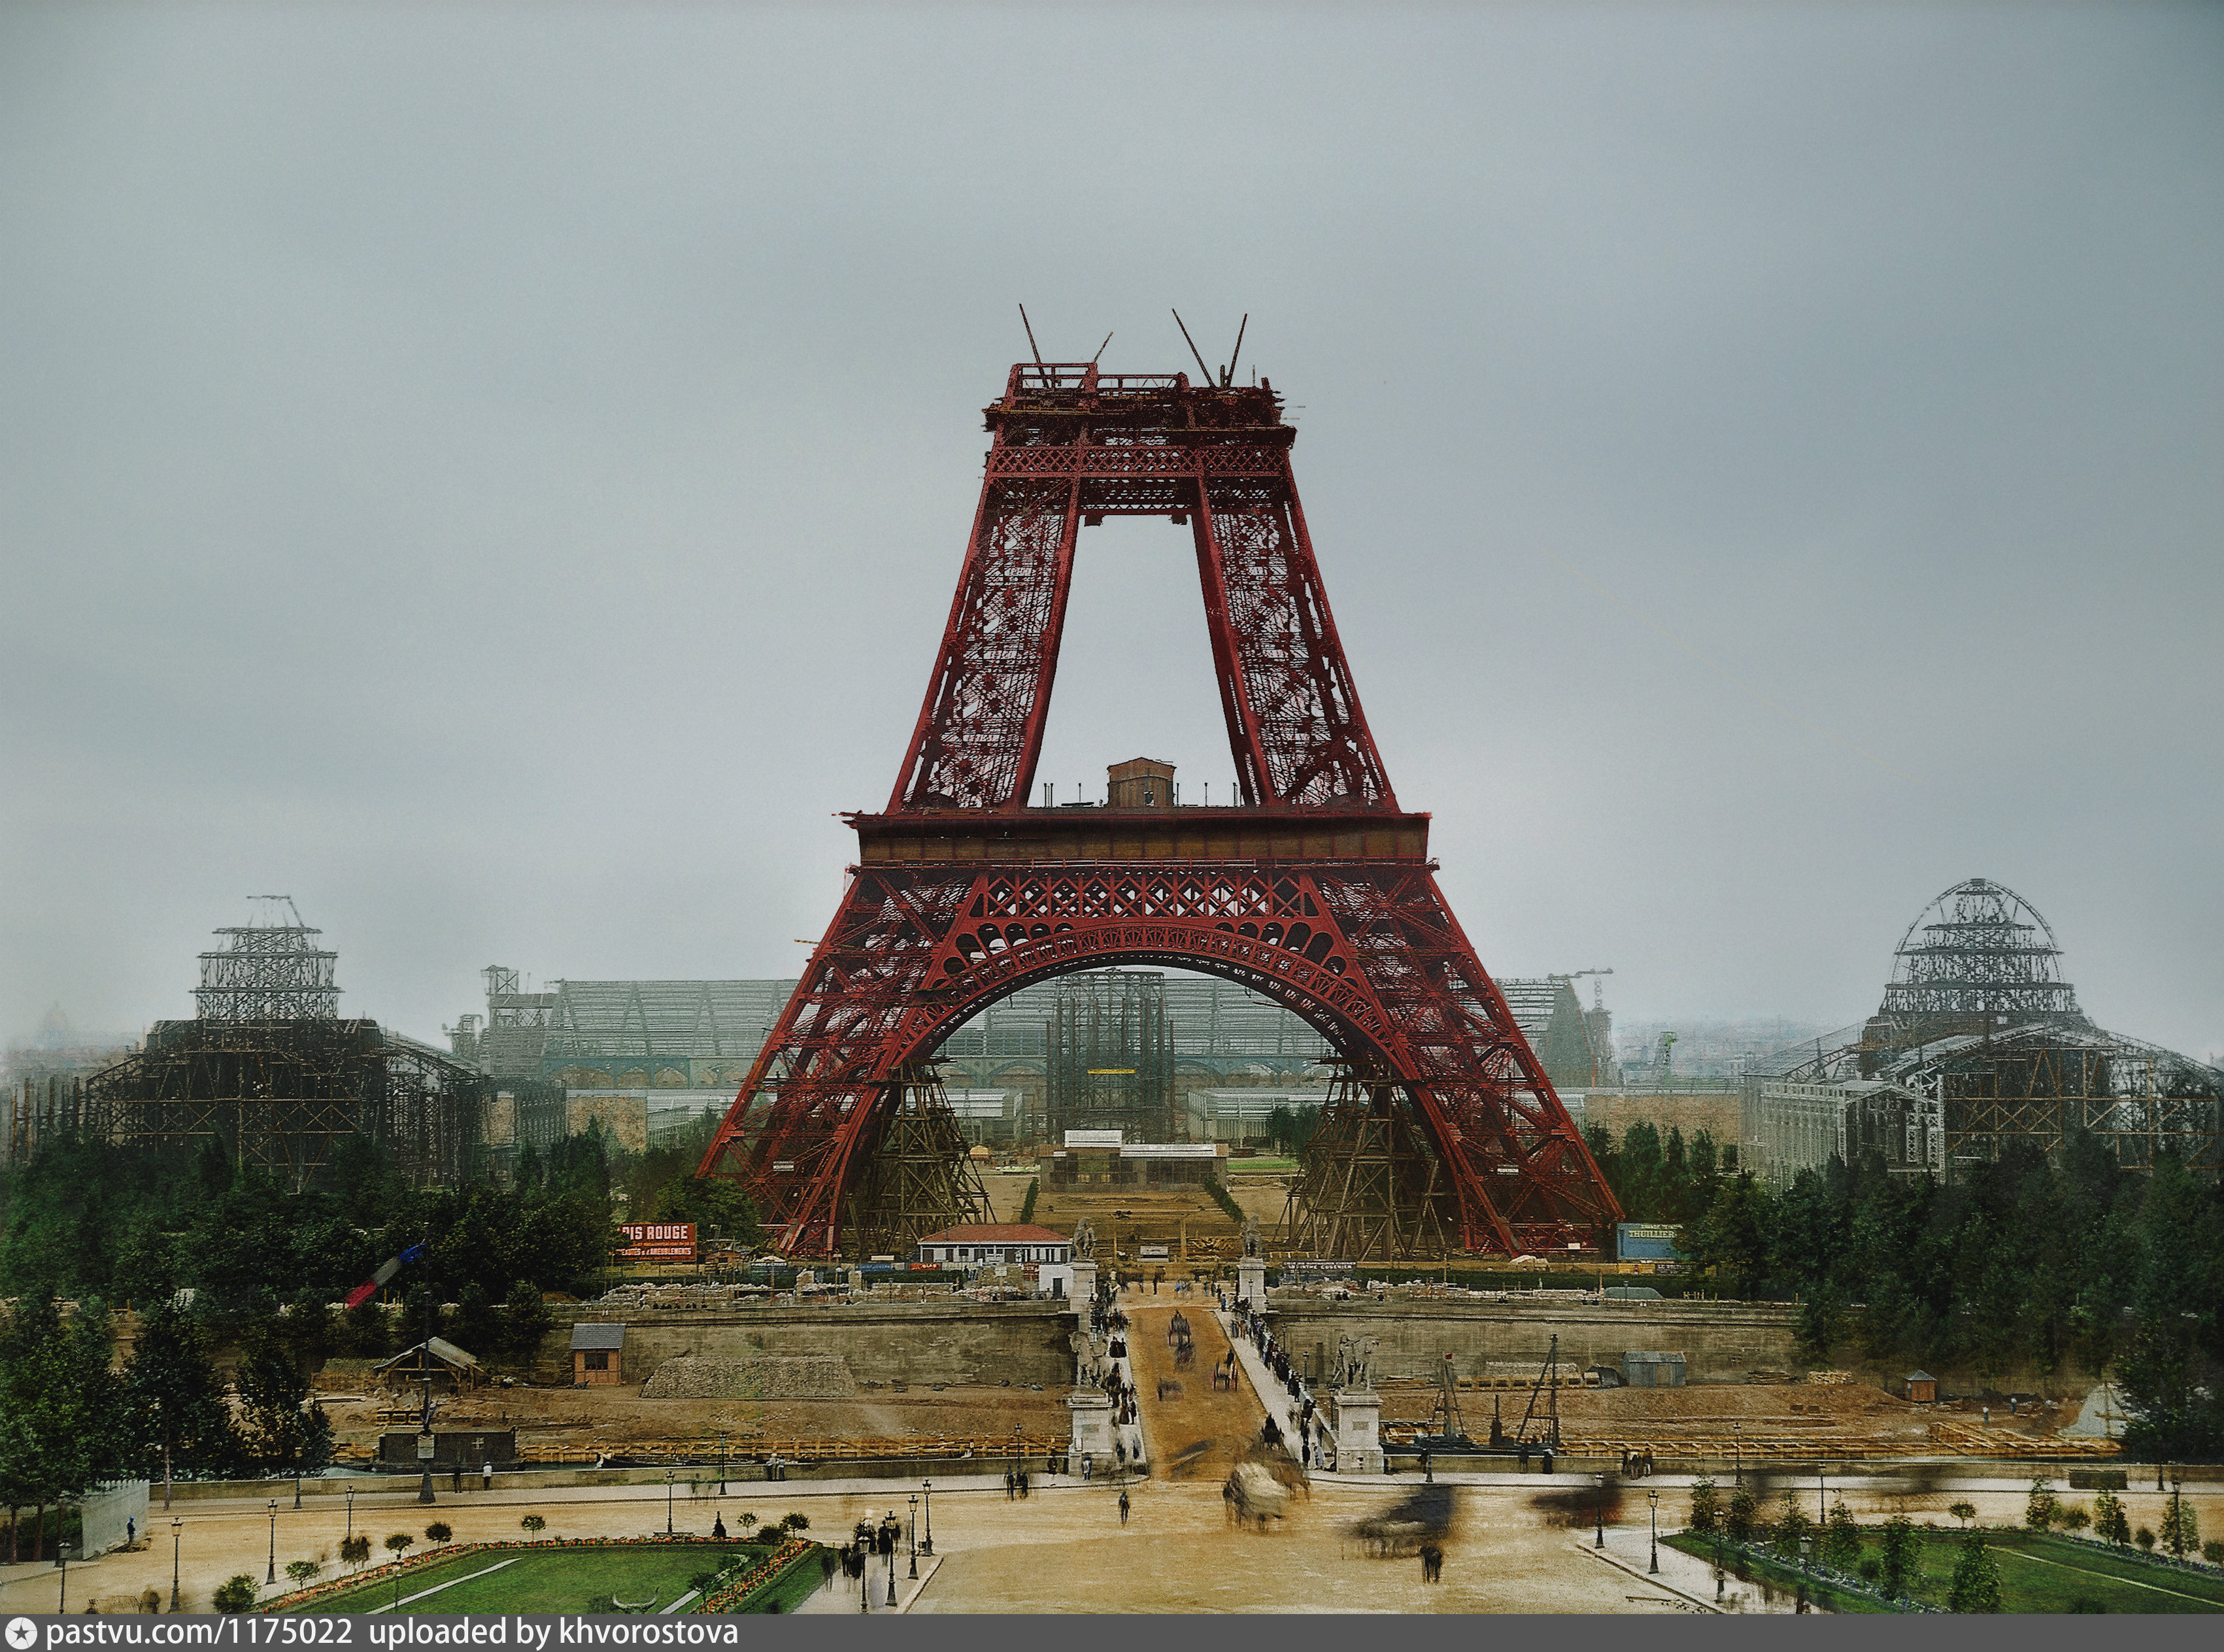 Какой год в париже. Гюстав Эйфель Эйфелева башня. Франция Париж Эйфелева башня 1889. Гюстав Эйфель. Эйфелева башня. 1887-1889 Гг.. Эйфелева башня 1888.